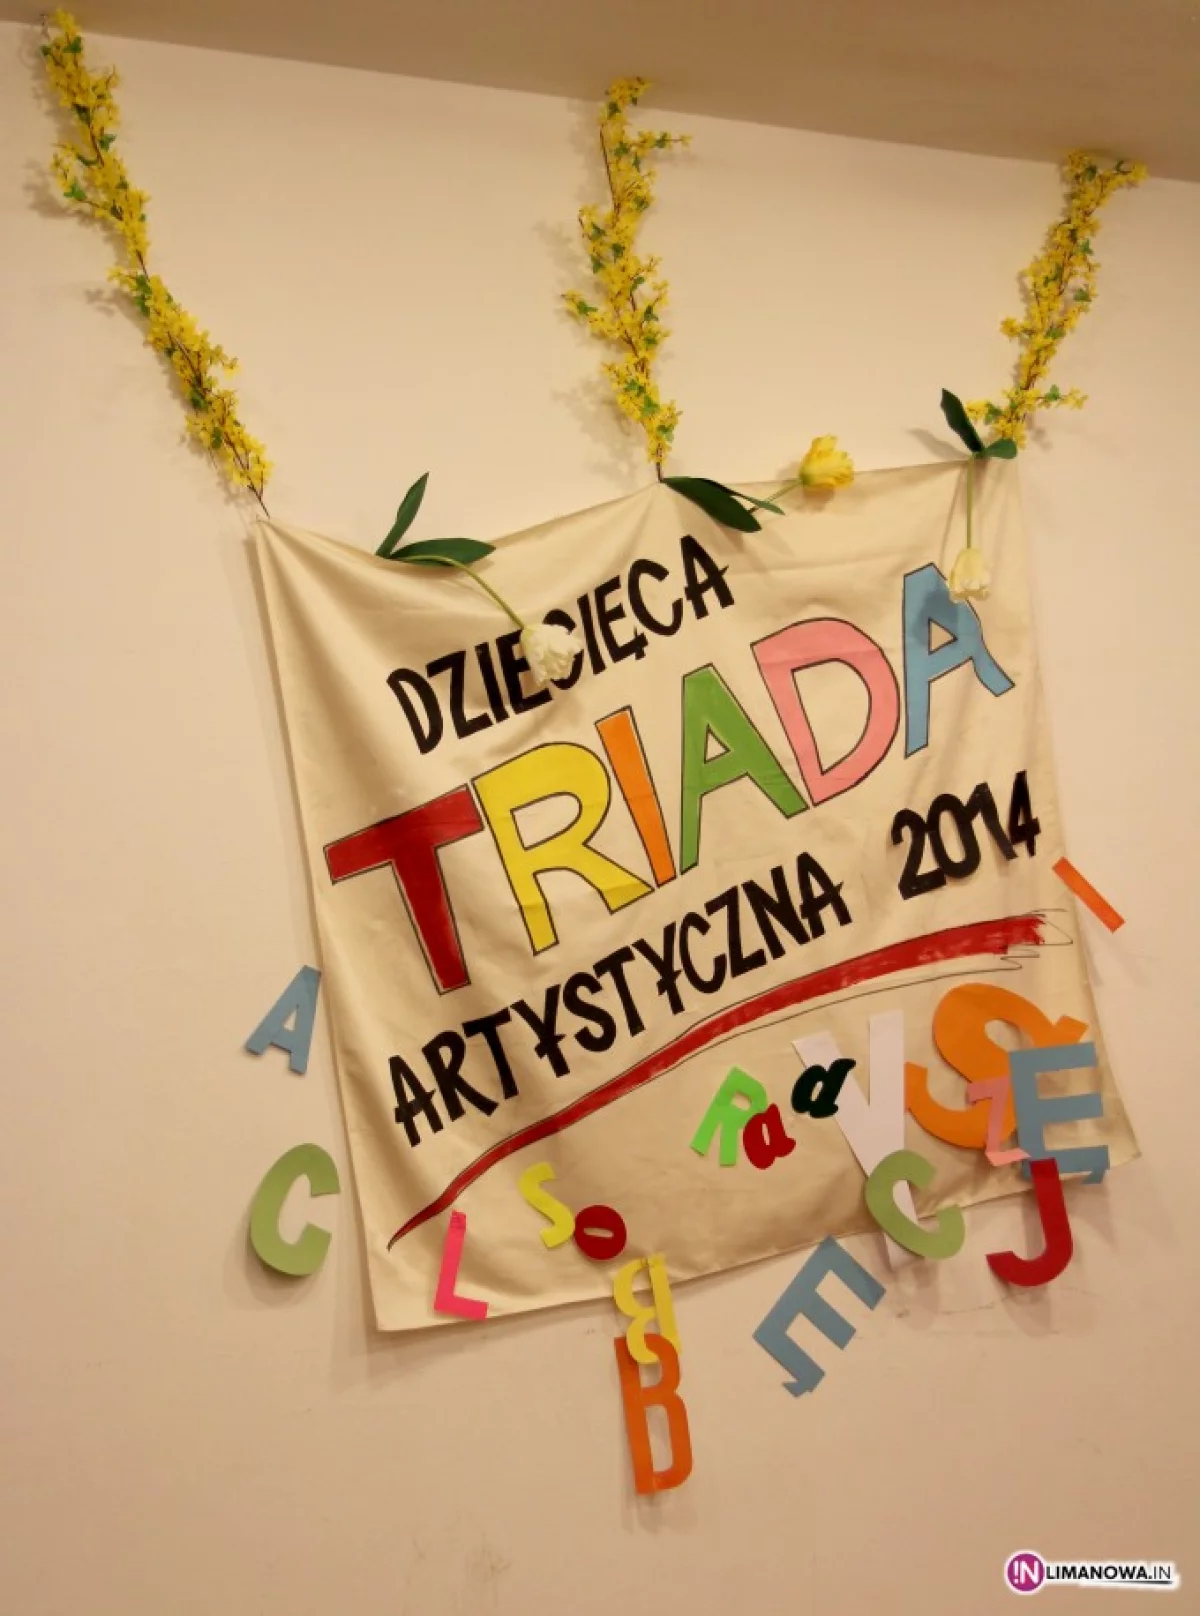 Wyniki Konkursu recytatorskiego - DZIECIĘCA TRIADA ARTYSTYCZNA 2014